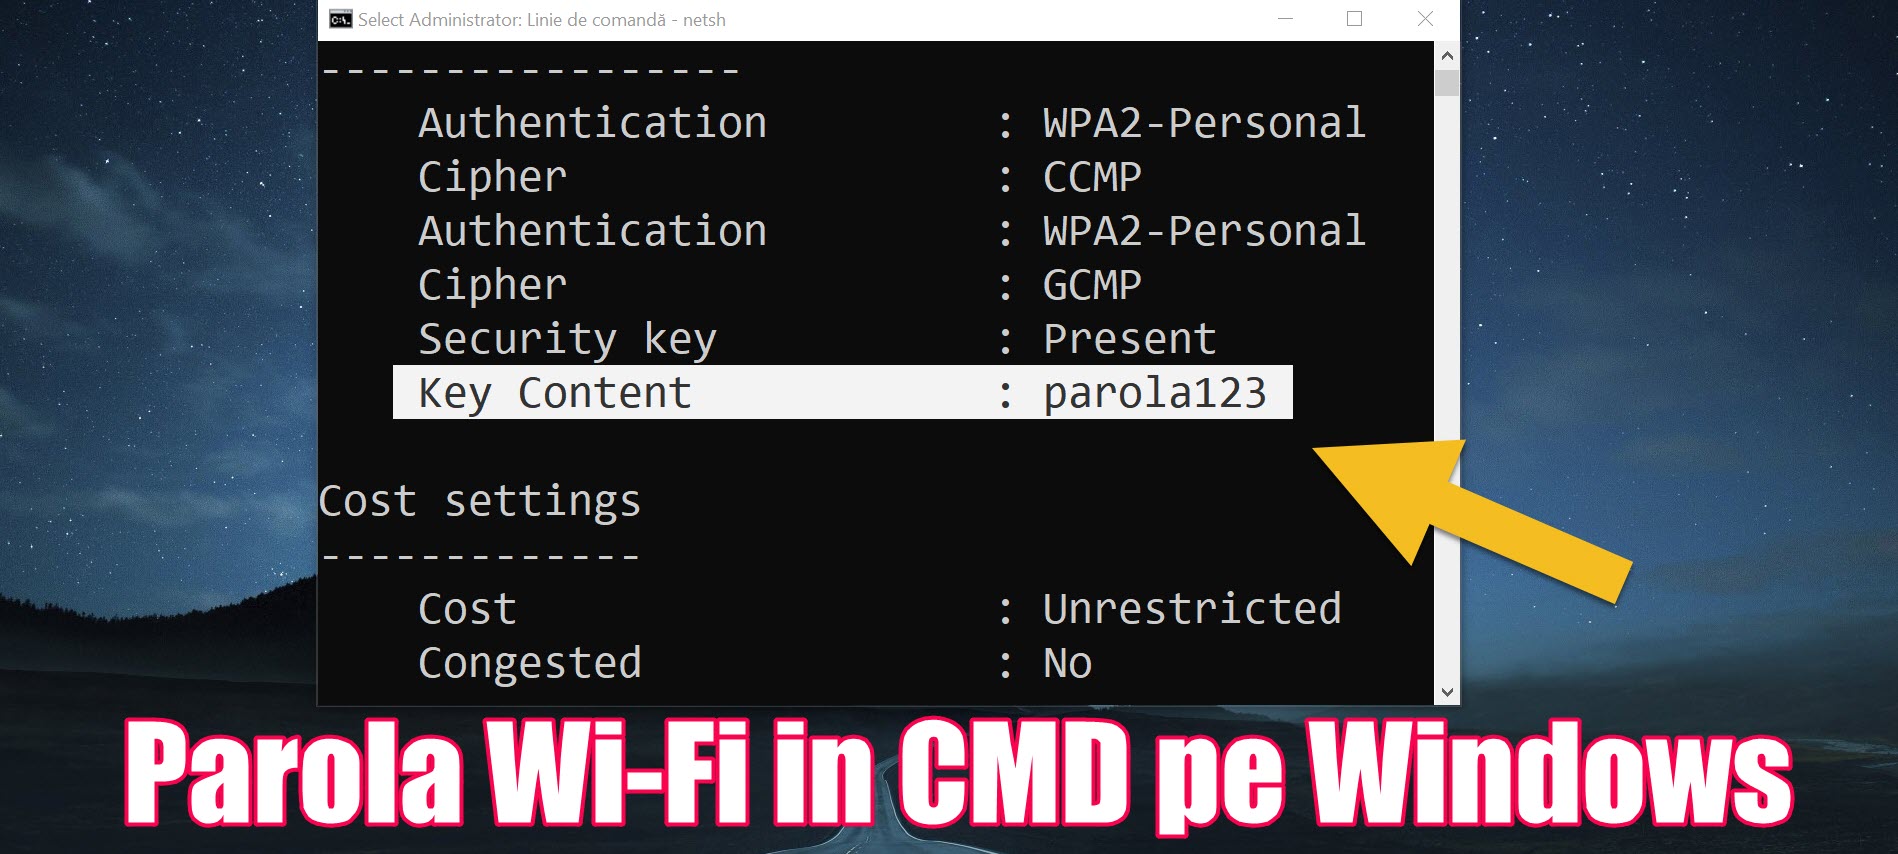 Patch if Empire Comanda afisare parole wi-fi in CMD - pe orice Windows